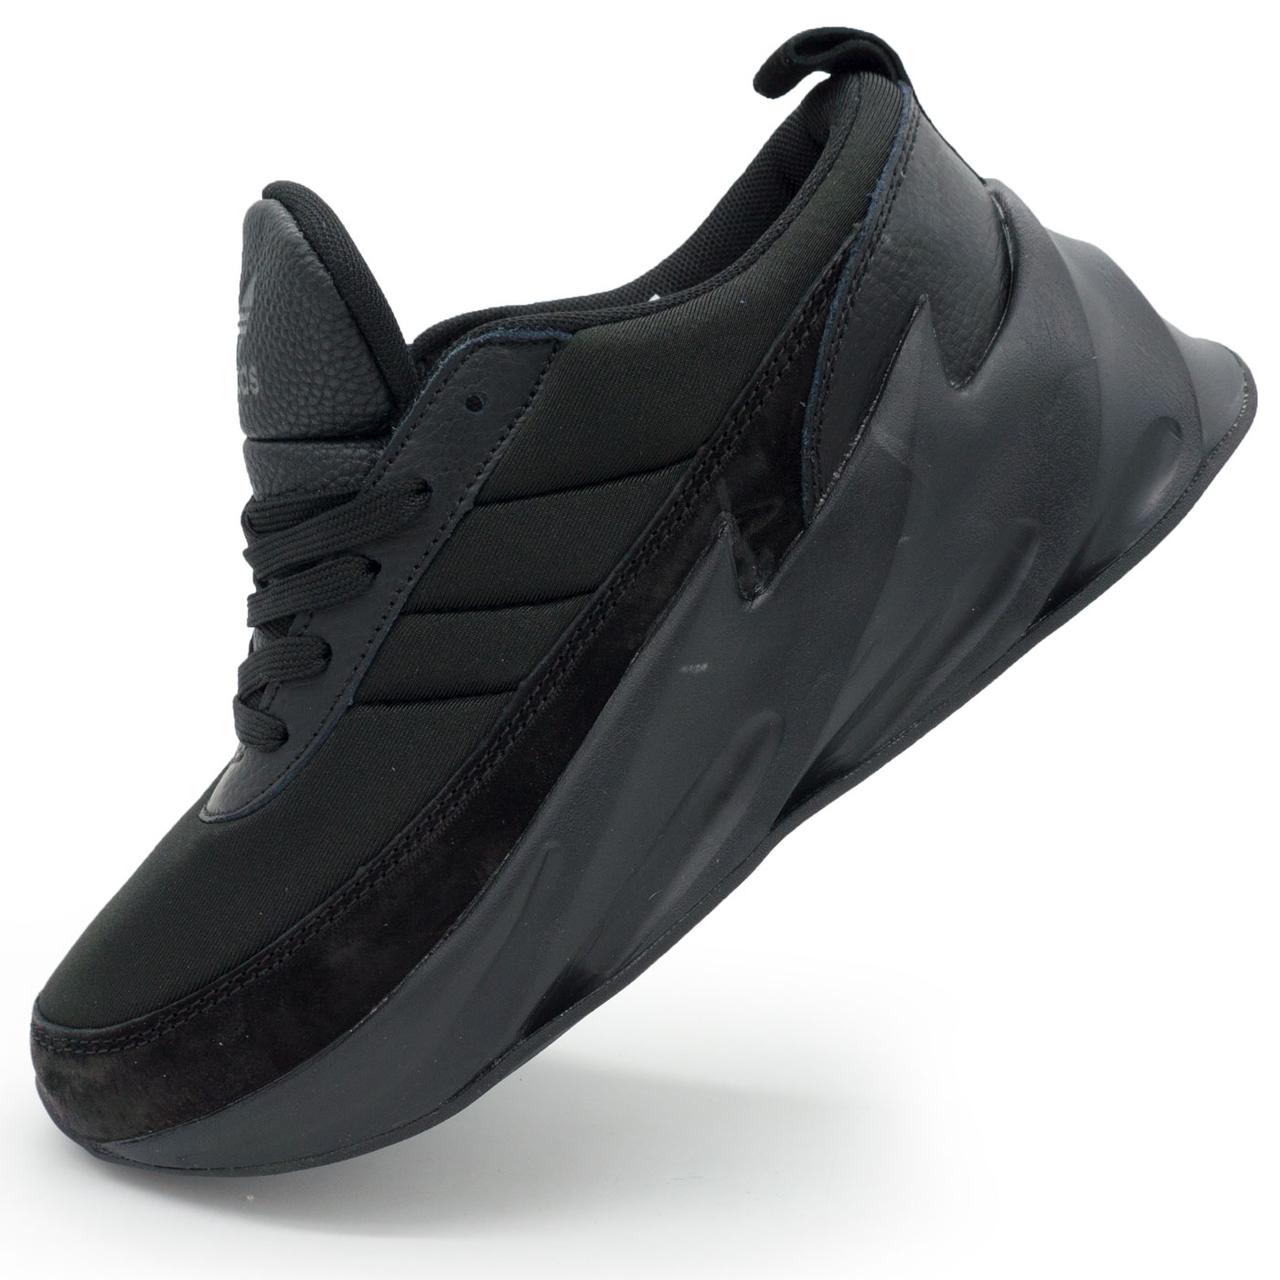 Жіночі кросівки Adidas Sharks повністю чорно. Топ якість! 36. Розміри в наявності: 36, 37.